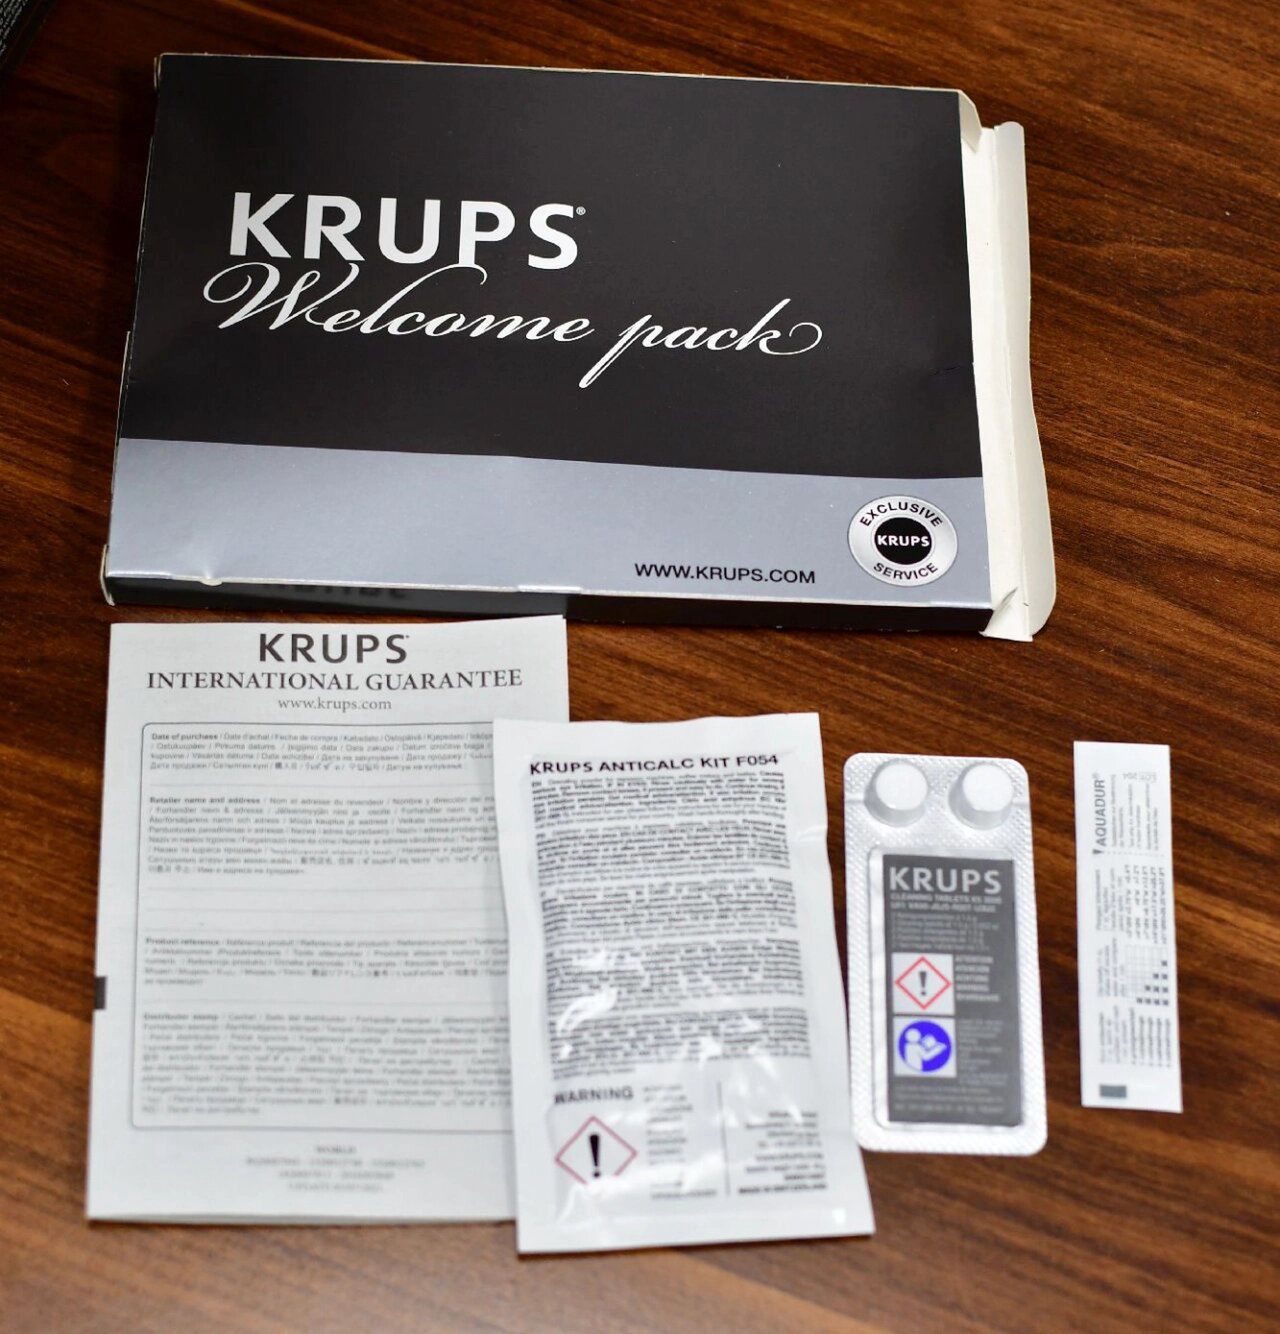 Welcome pack z ekspresu Krups. Znajduje się w nim karta gwarancyjna, odkamieniacz, tabletki czyszczące oraz test twardości wody.